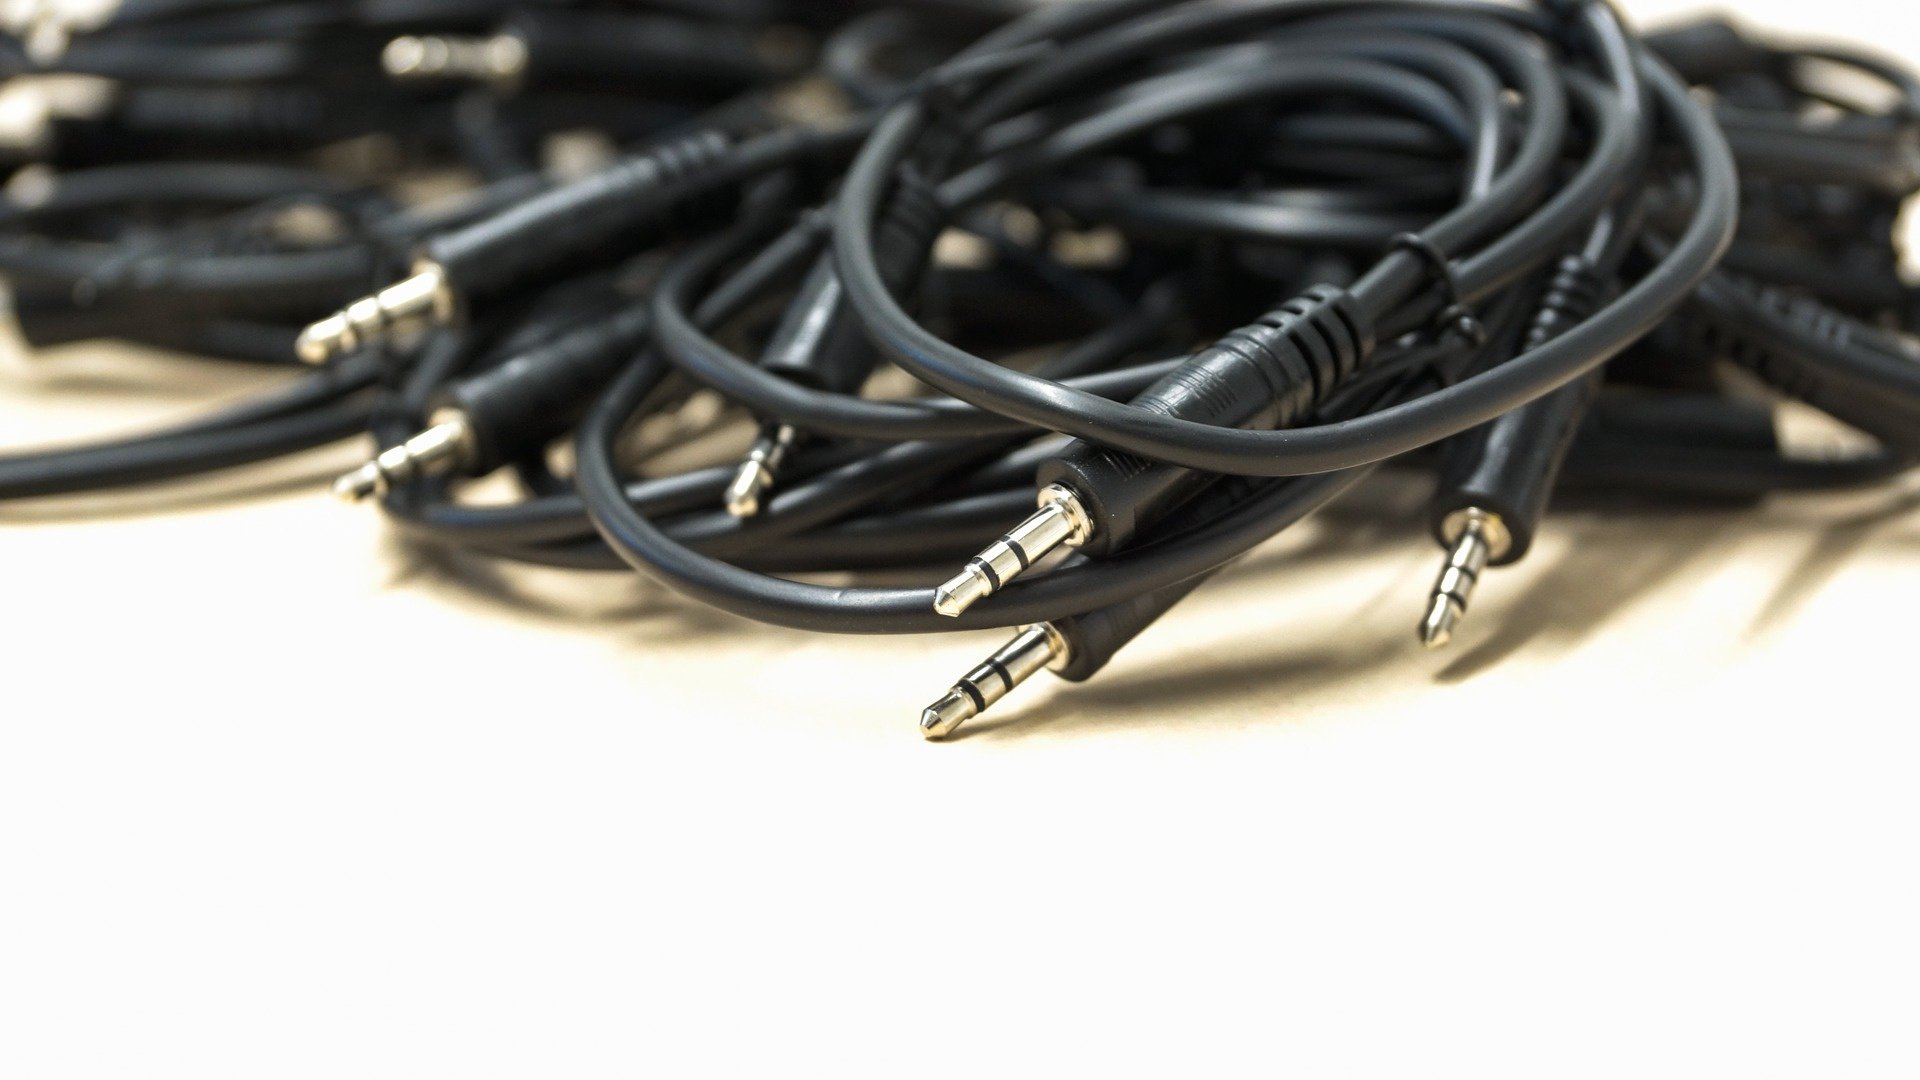 Разберите кабели на металлолом
